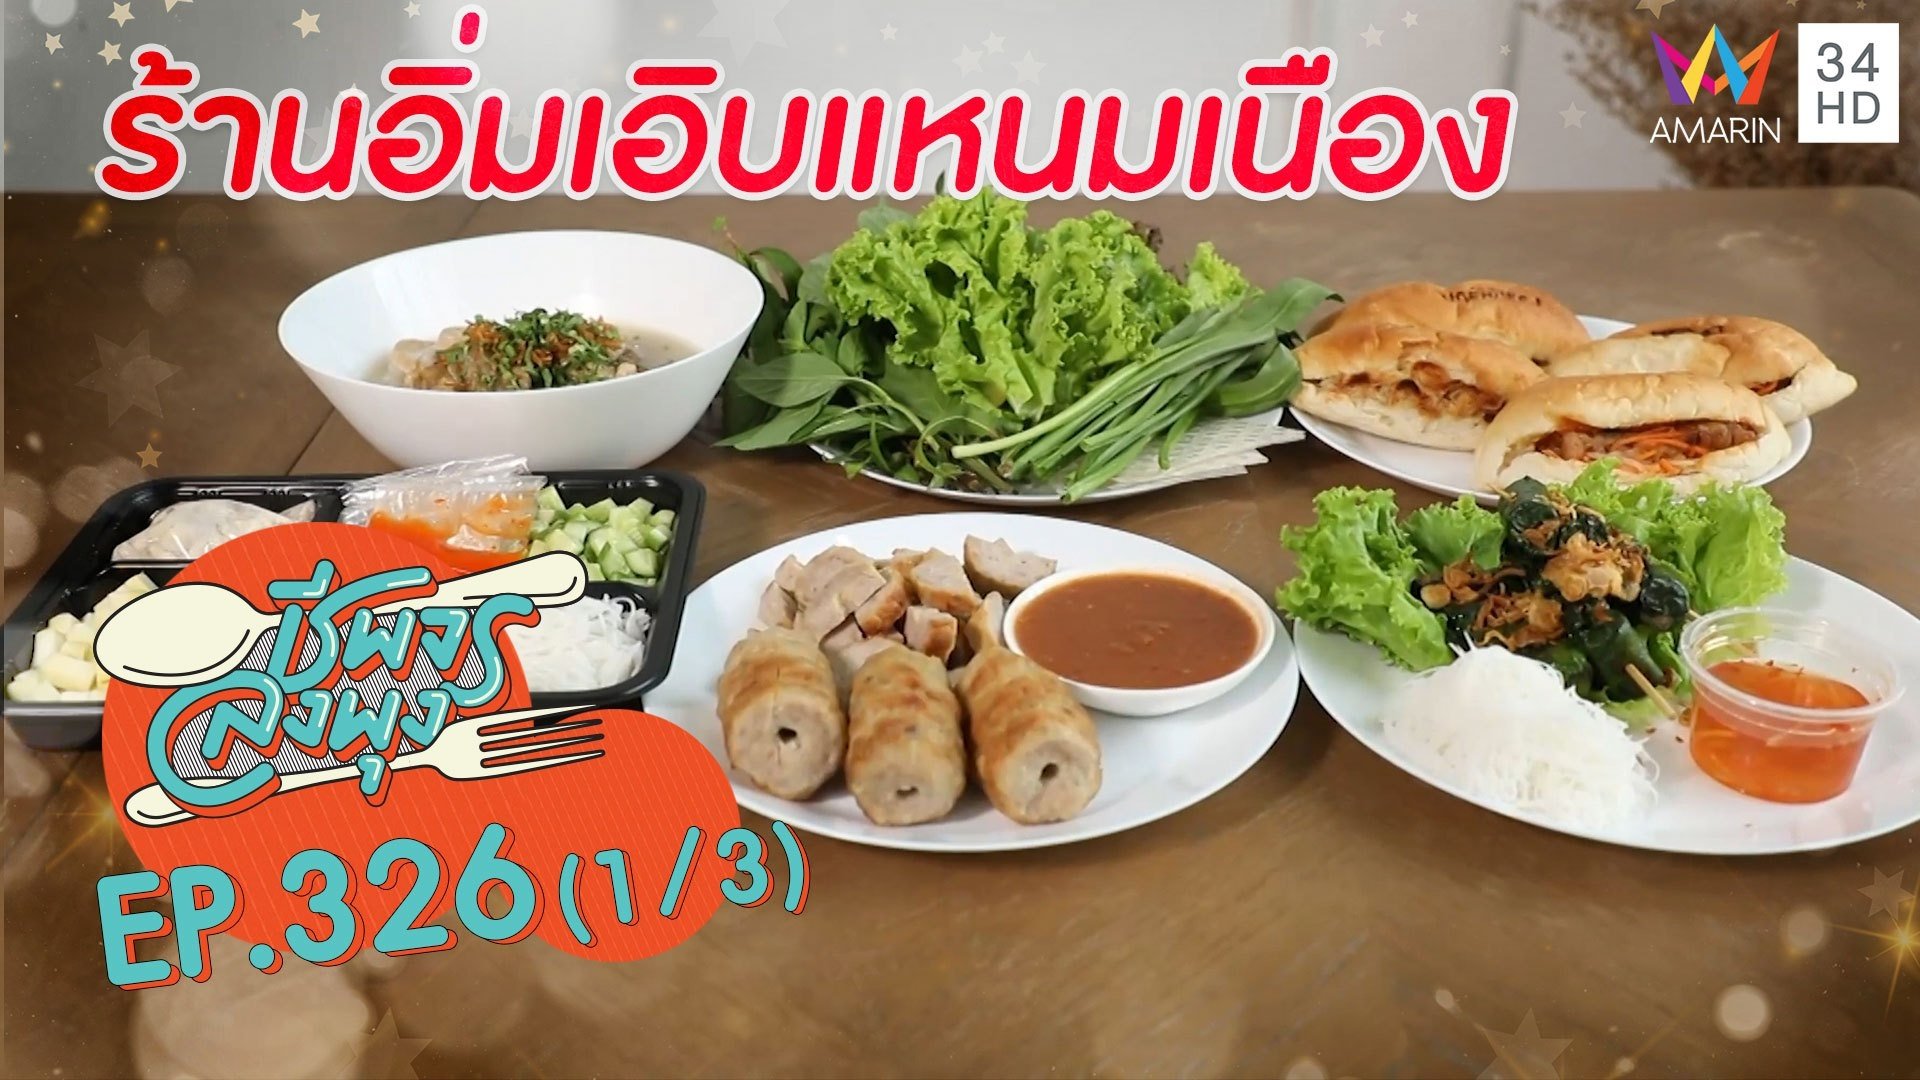 อาหารเวียดนาม ยิ่งกินก็ยิ่งฟิน @ ร้านอิ่มเอิบแหนมเนือง | ชีพจรลงพุง | 19 ก.ย. 64 (1/3) | AMARIN TVHD34